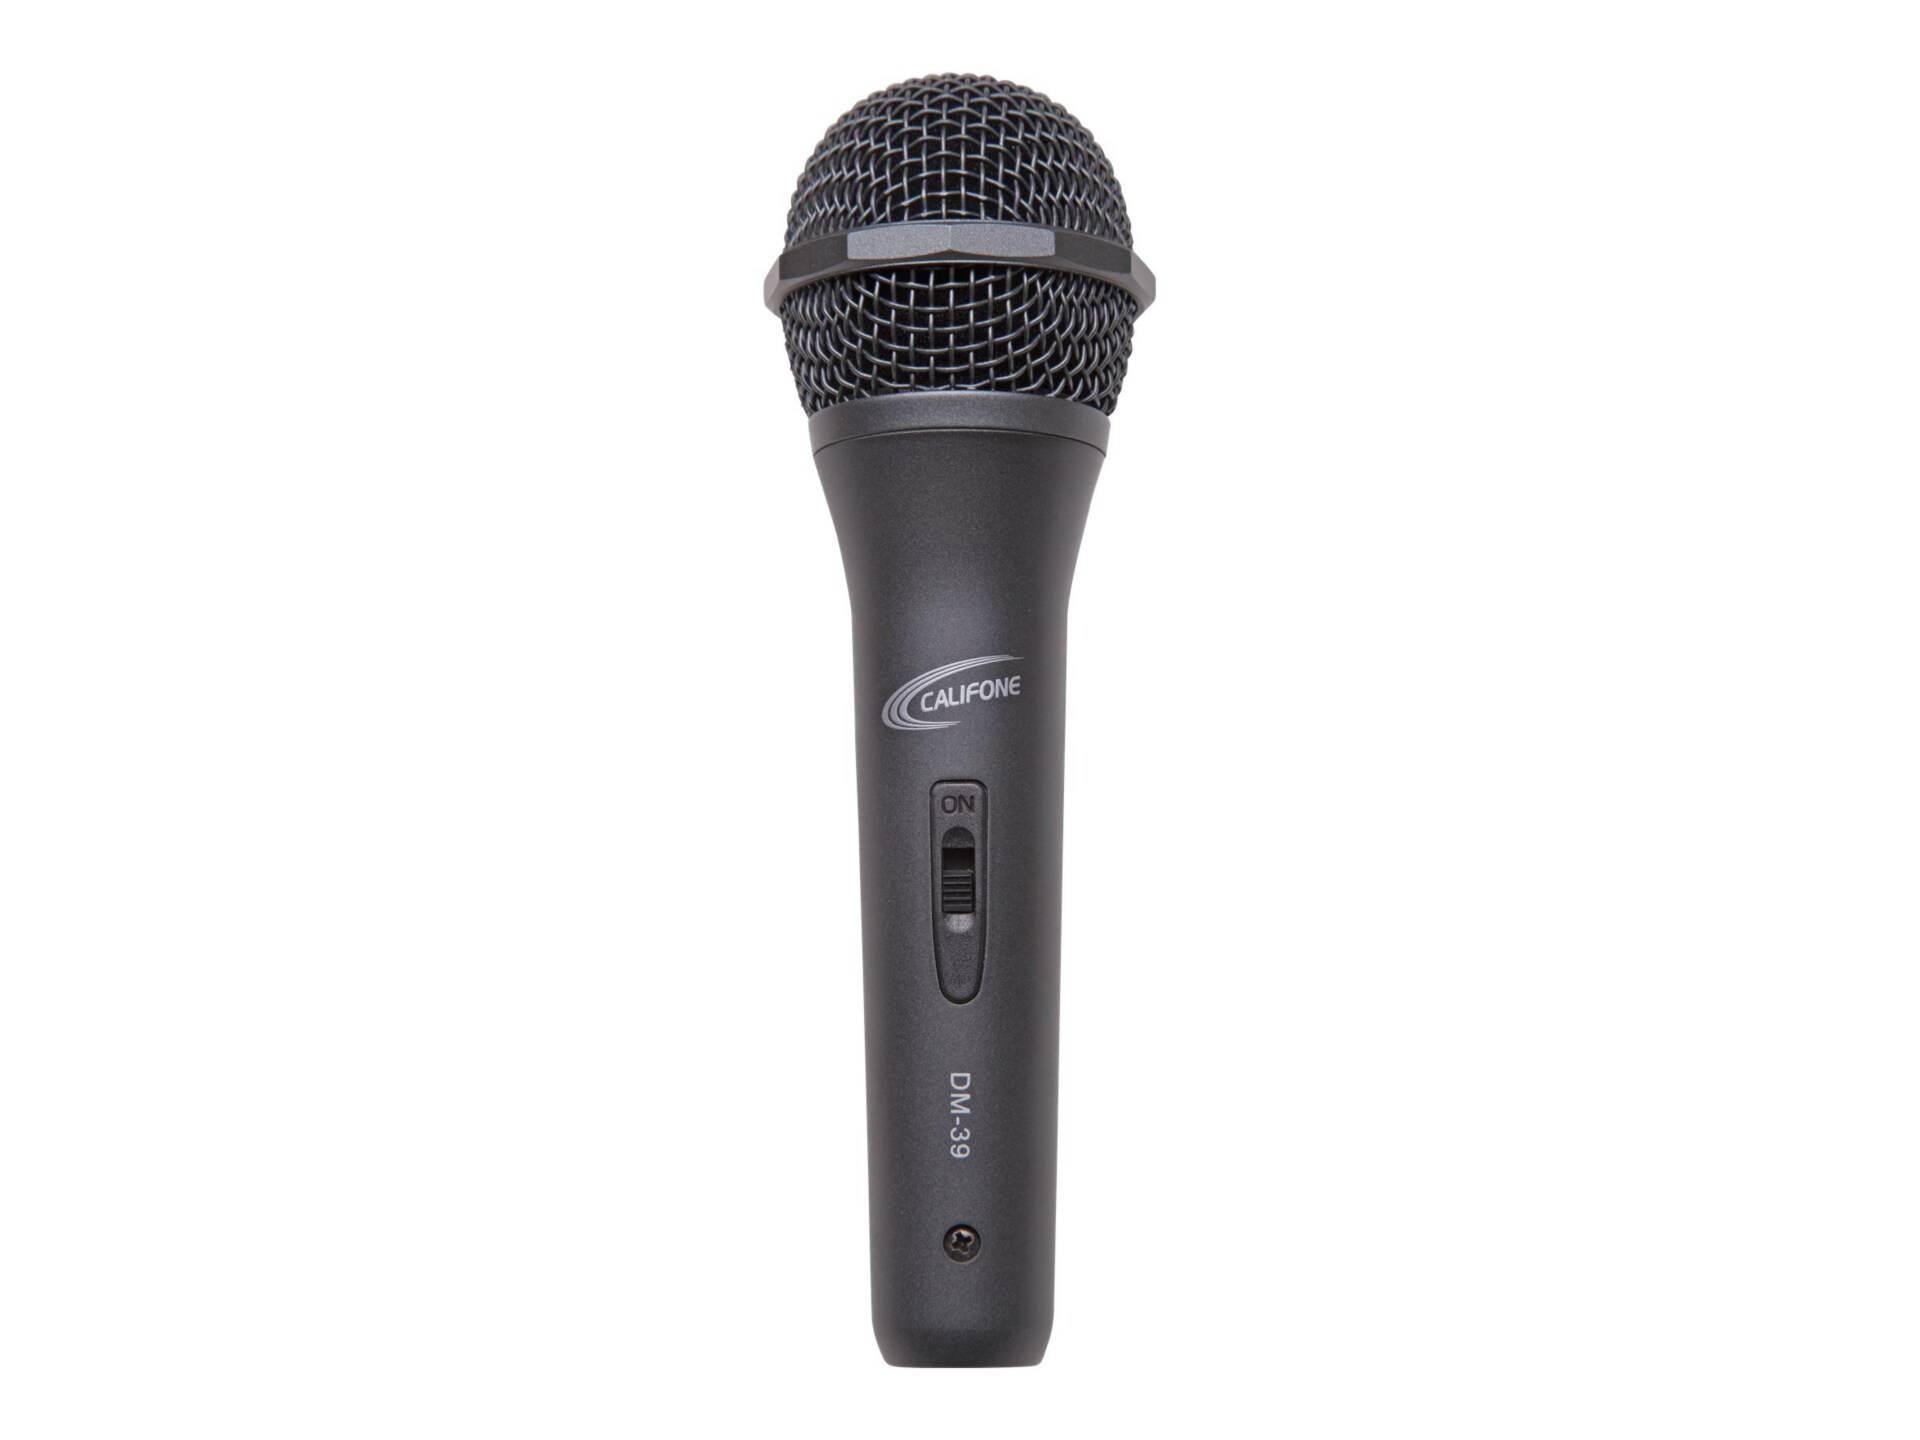 Califone DM-39XLR - microphone